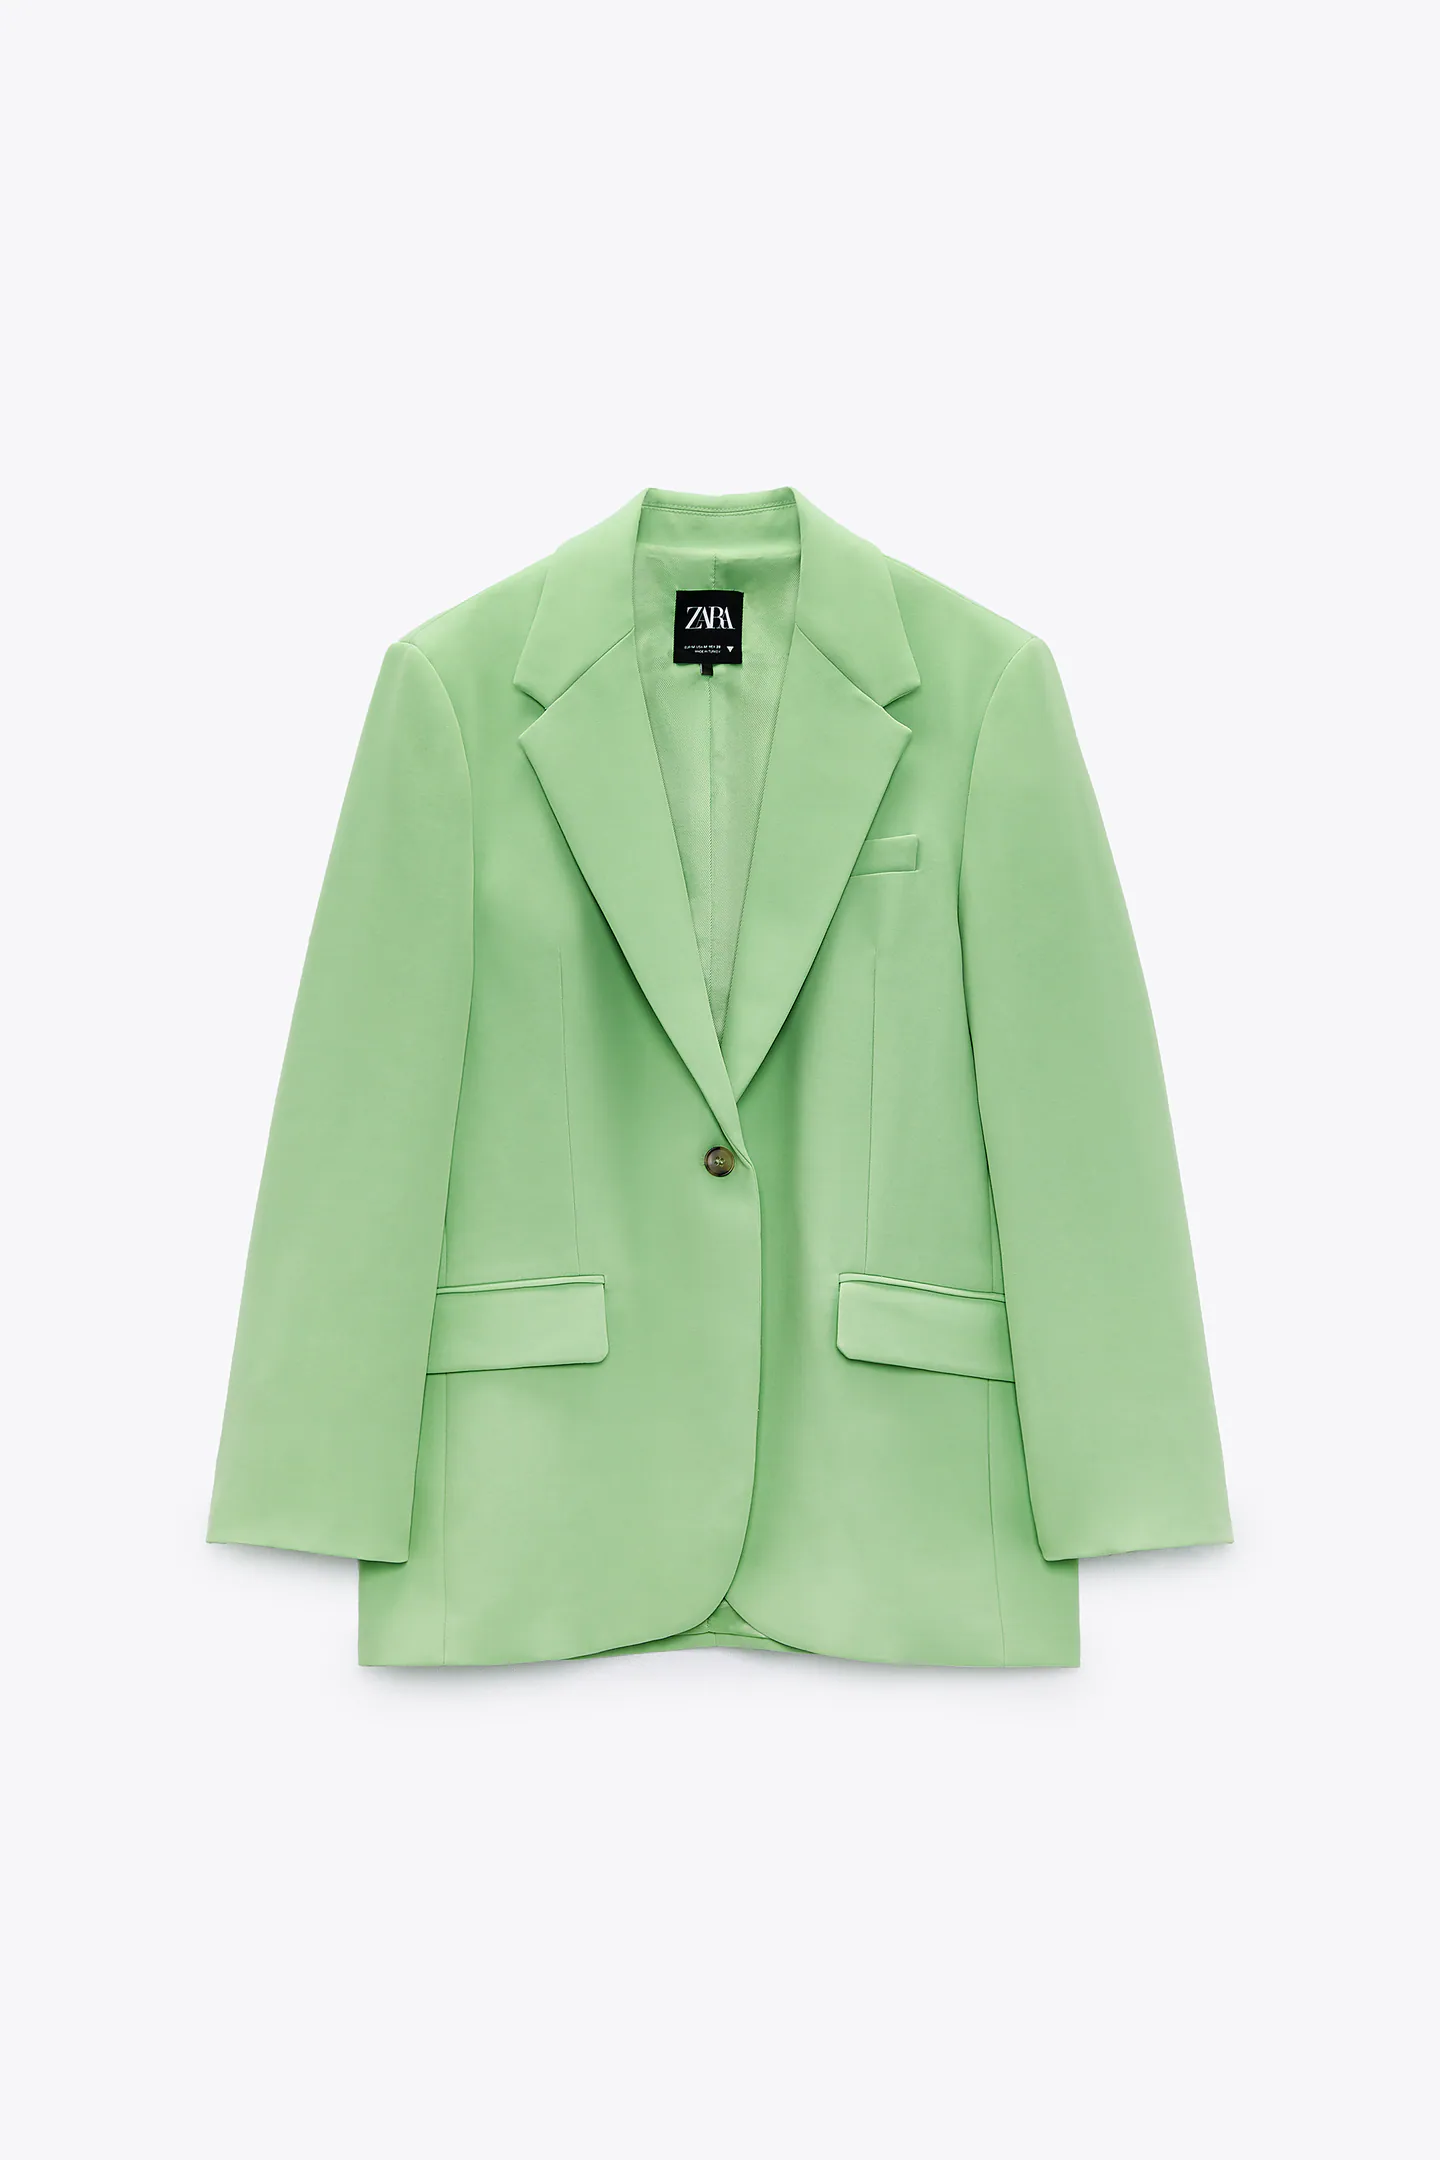 Zara Oversized Menswear Style Blazer